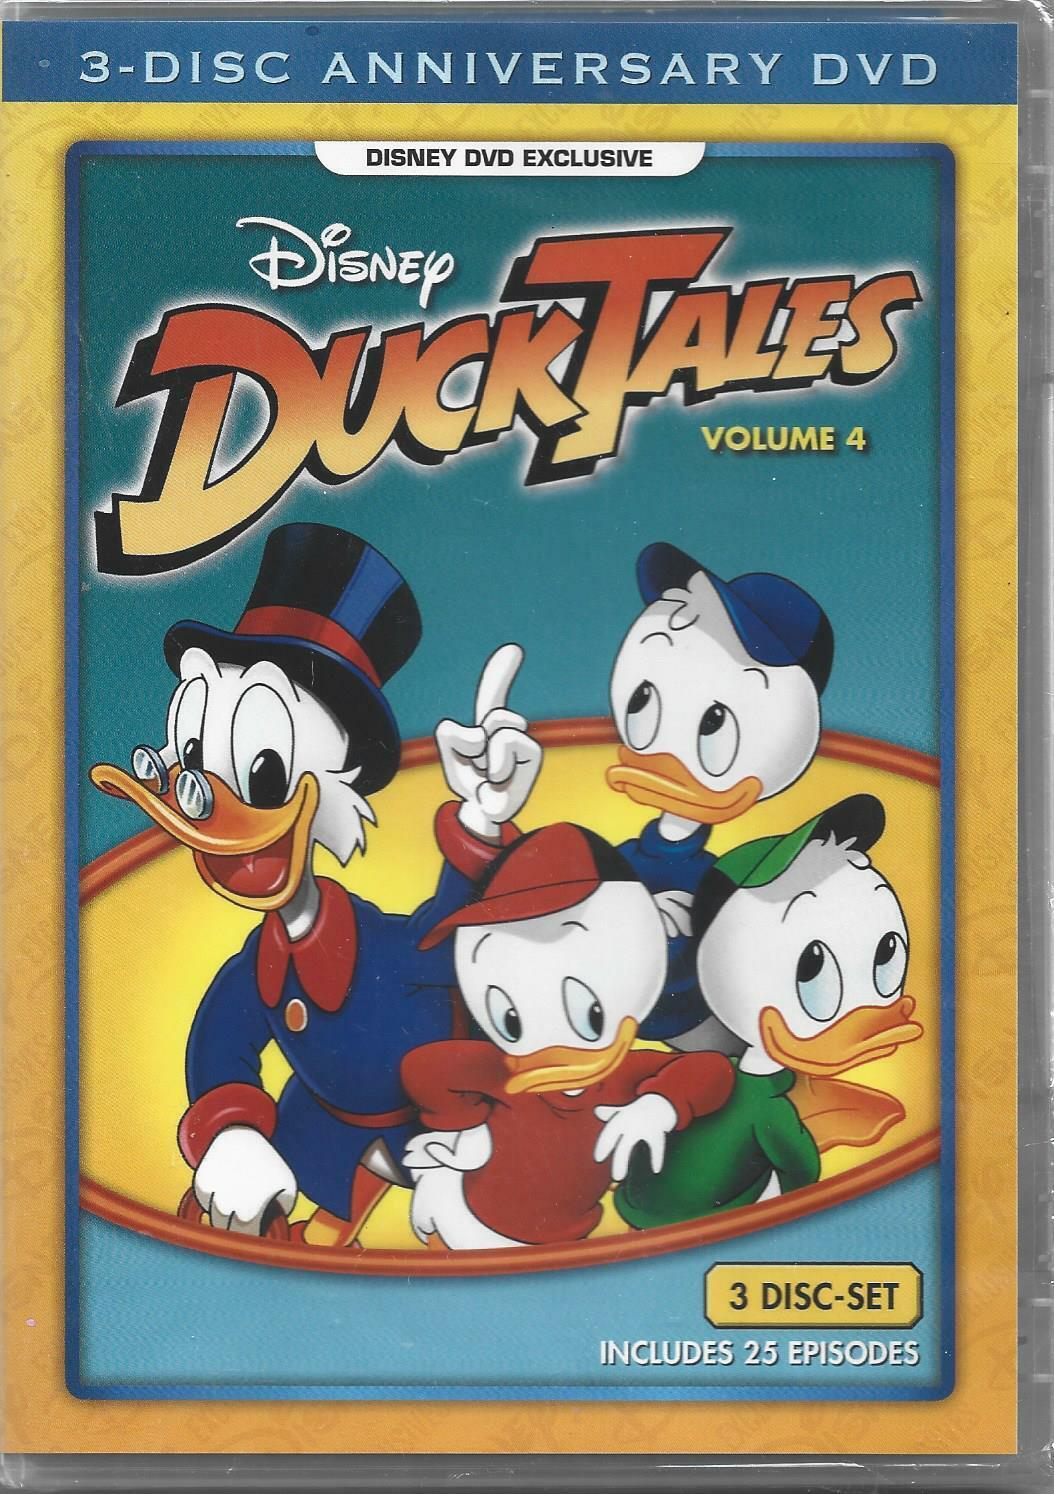 DuckTales&colon; Volume 4 &lpar;DVD&comma; 2008&comma; 3-Disc Anniversary&comma; Disney Movie Club&rpar; NEW&excl;